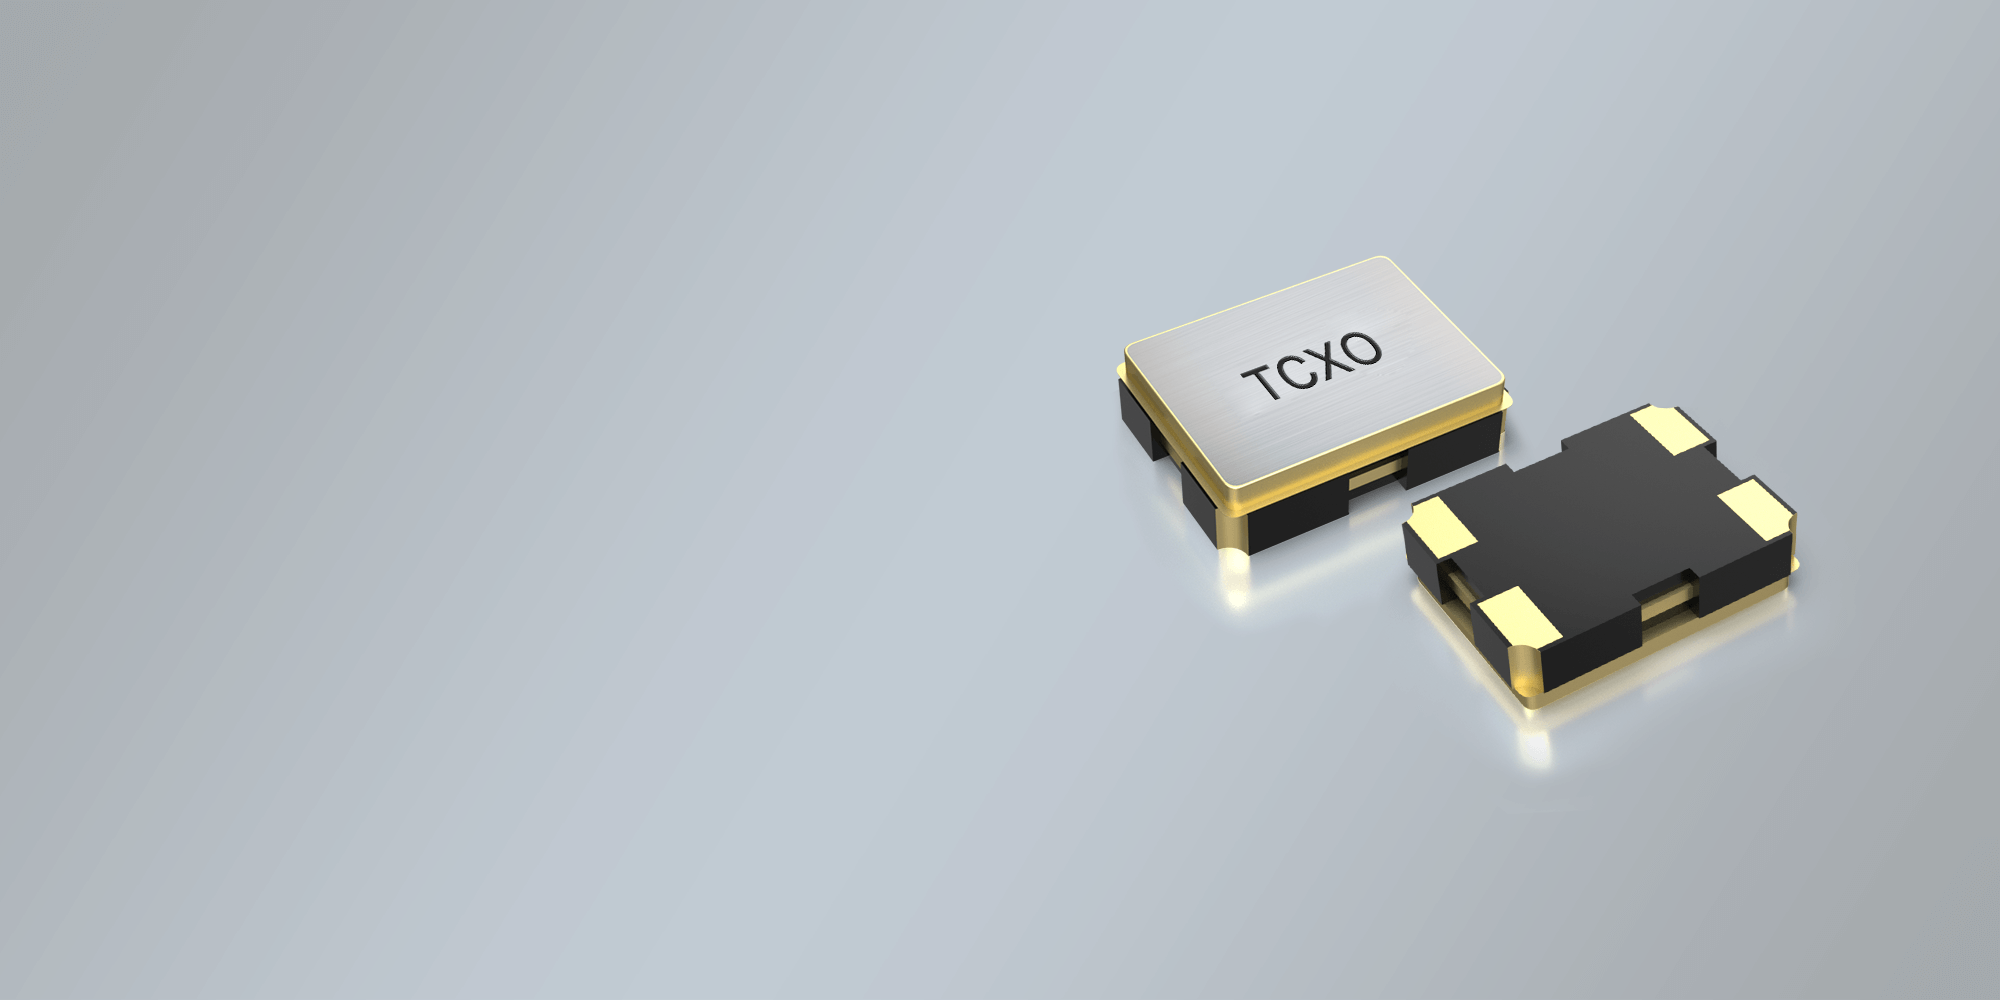 SMD TCXO OSCILLATOR 2.0 x 1.6 mm